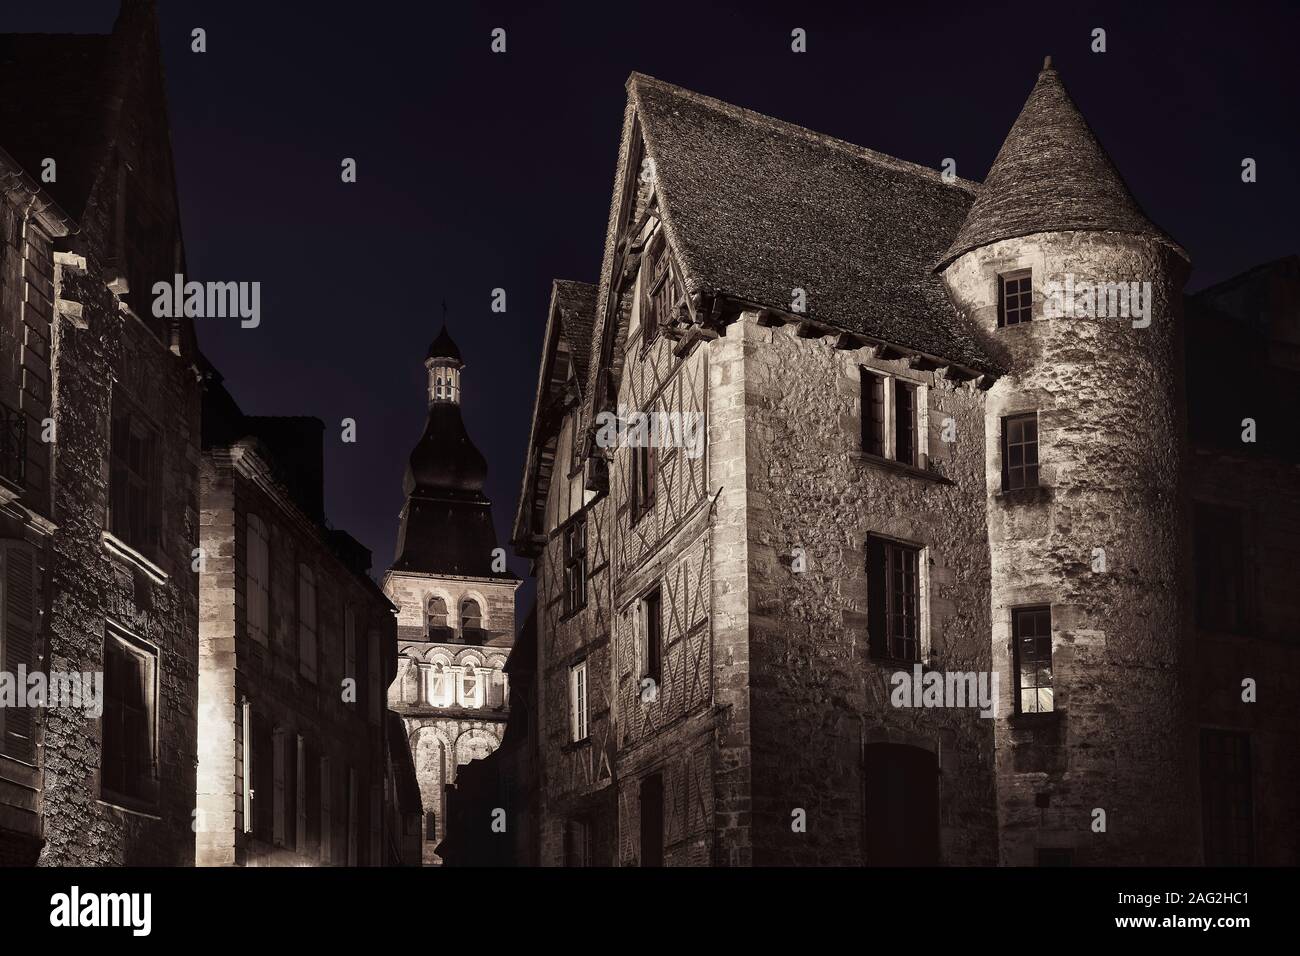 Angosta calle antigua vacía en un pueblo medieval en Francia, iluminada por una lámpara de la calle por la noche. Espectaculares paisajes nocturnos en bellas artes. Blanco y negro, en tonos sepia. Foto de stock